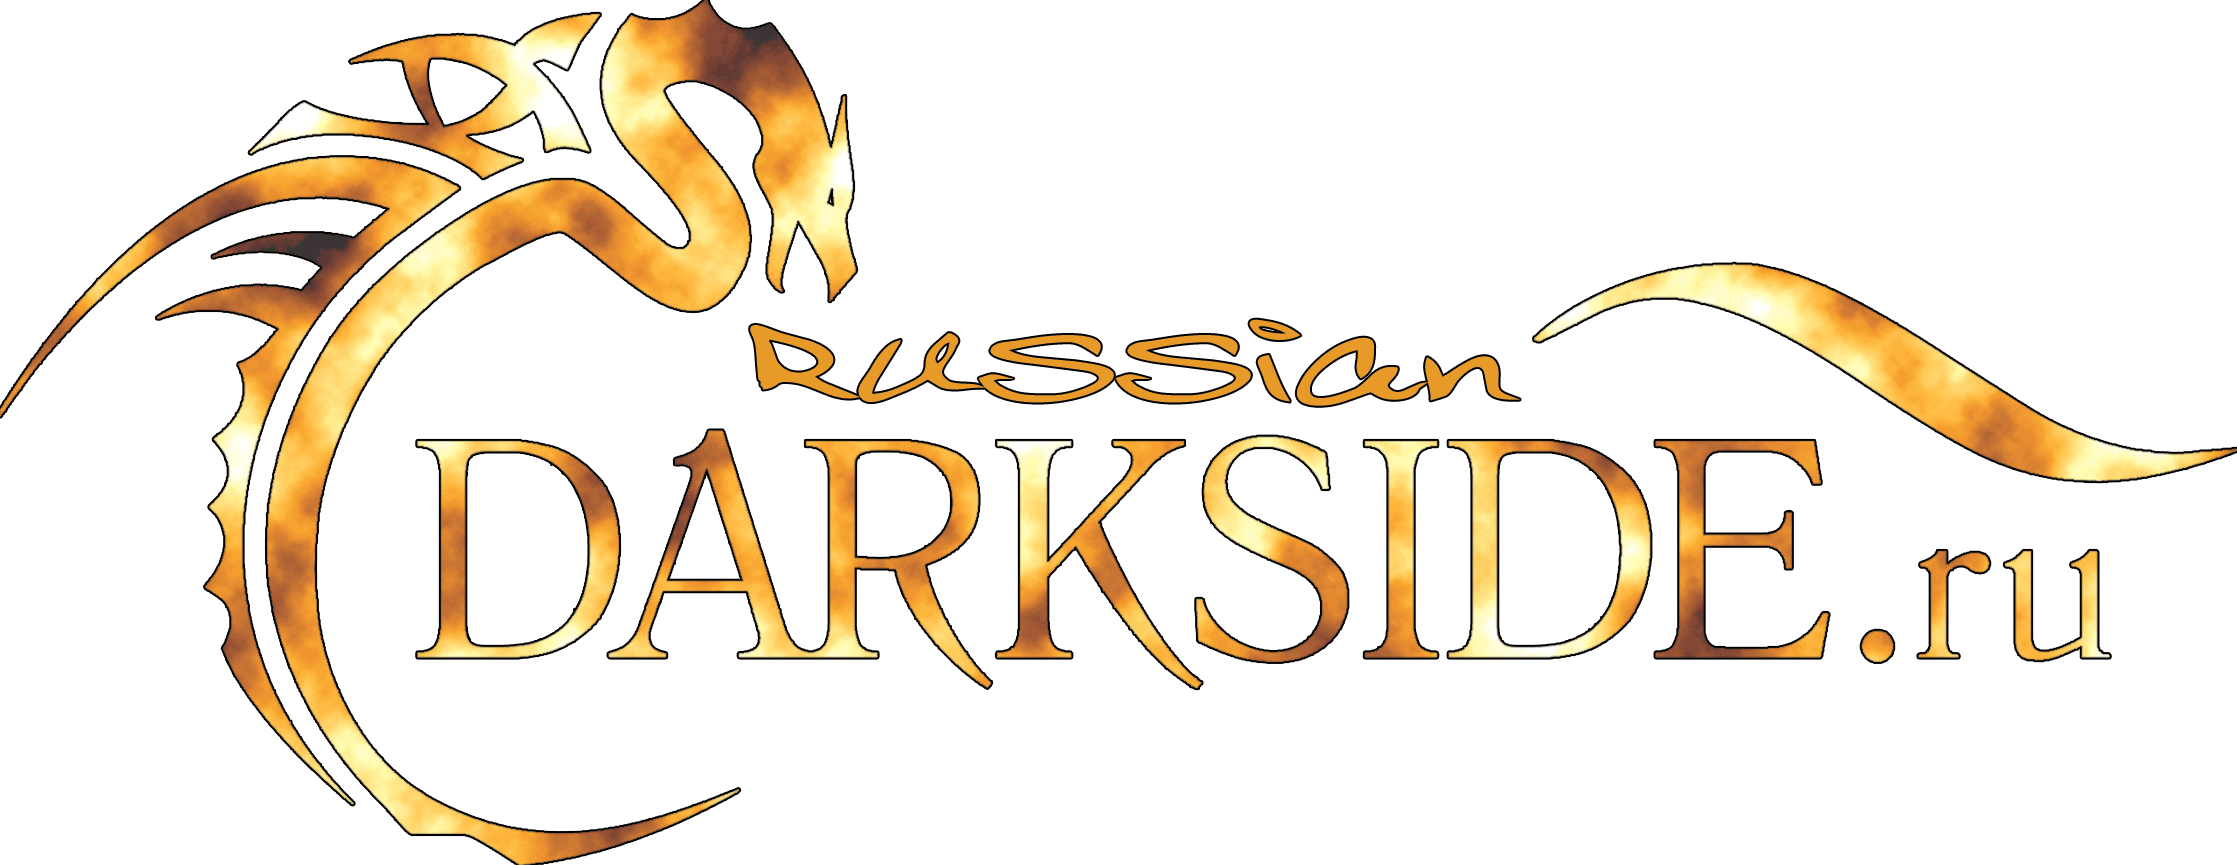 darksideru-logo